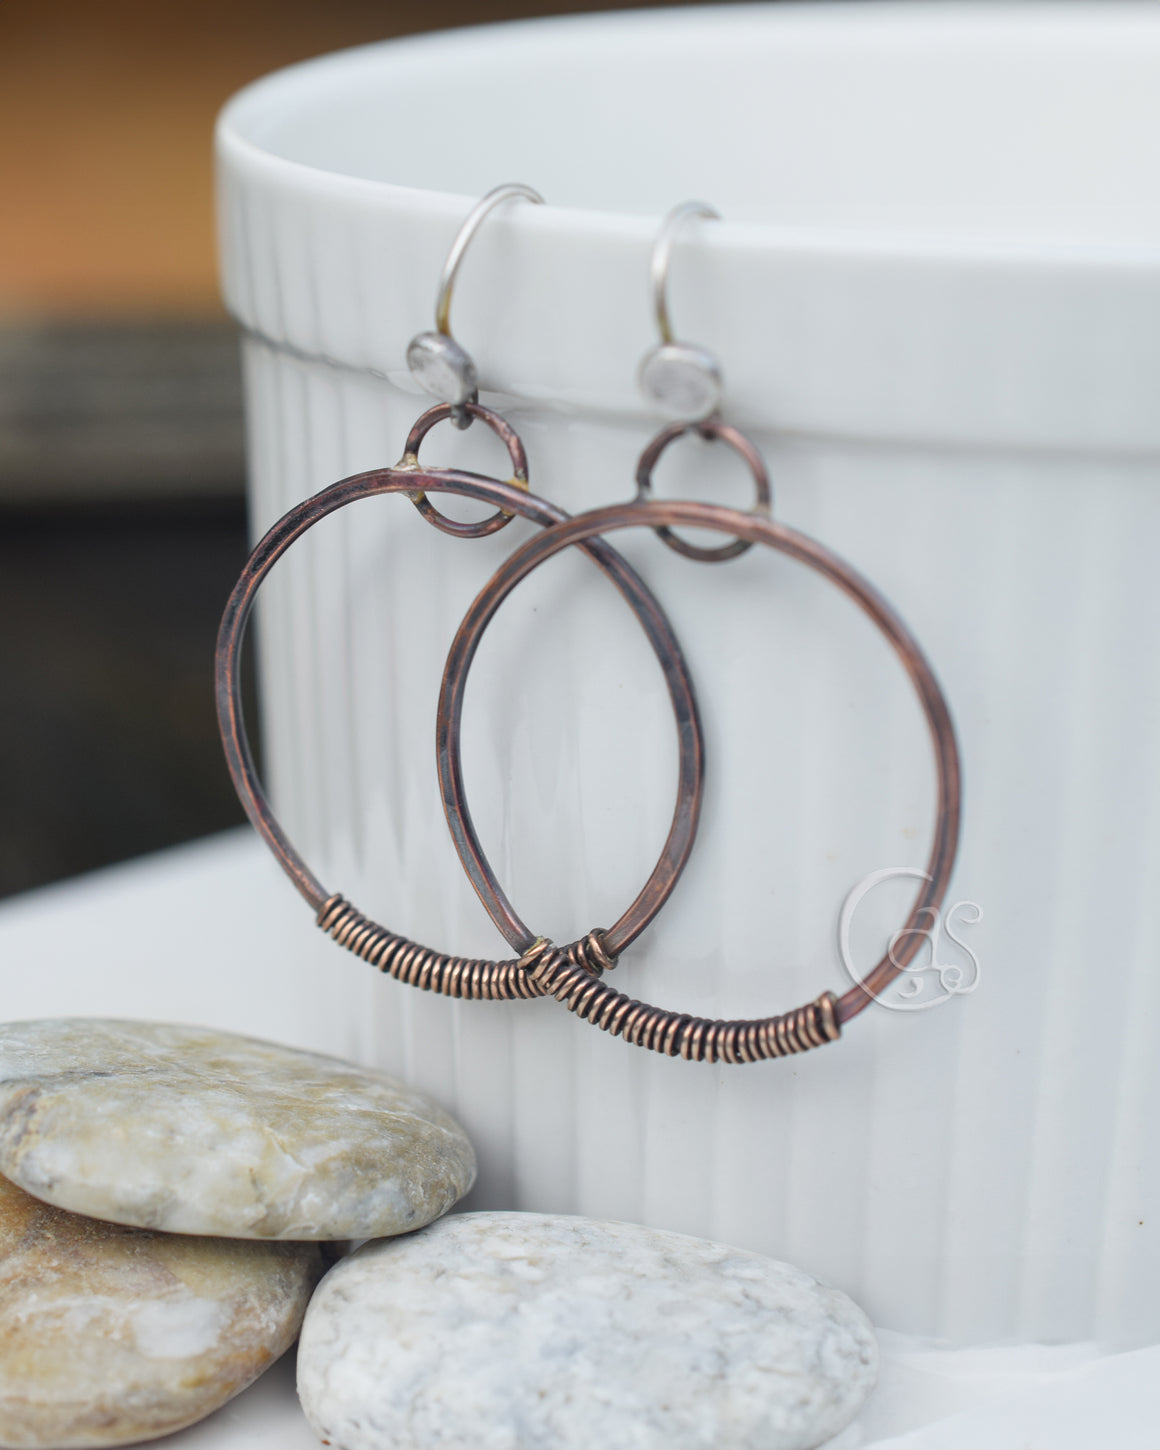 Copper Golden Wrapped Hoop Earrings. Bronze + Pure Copper Sterling Ear Rings 12236